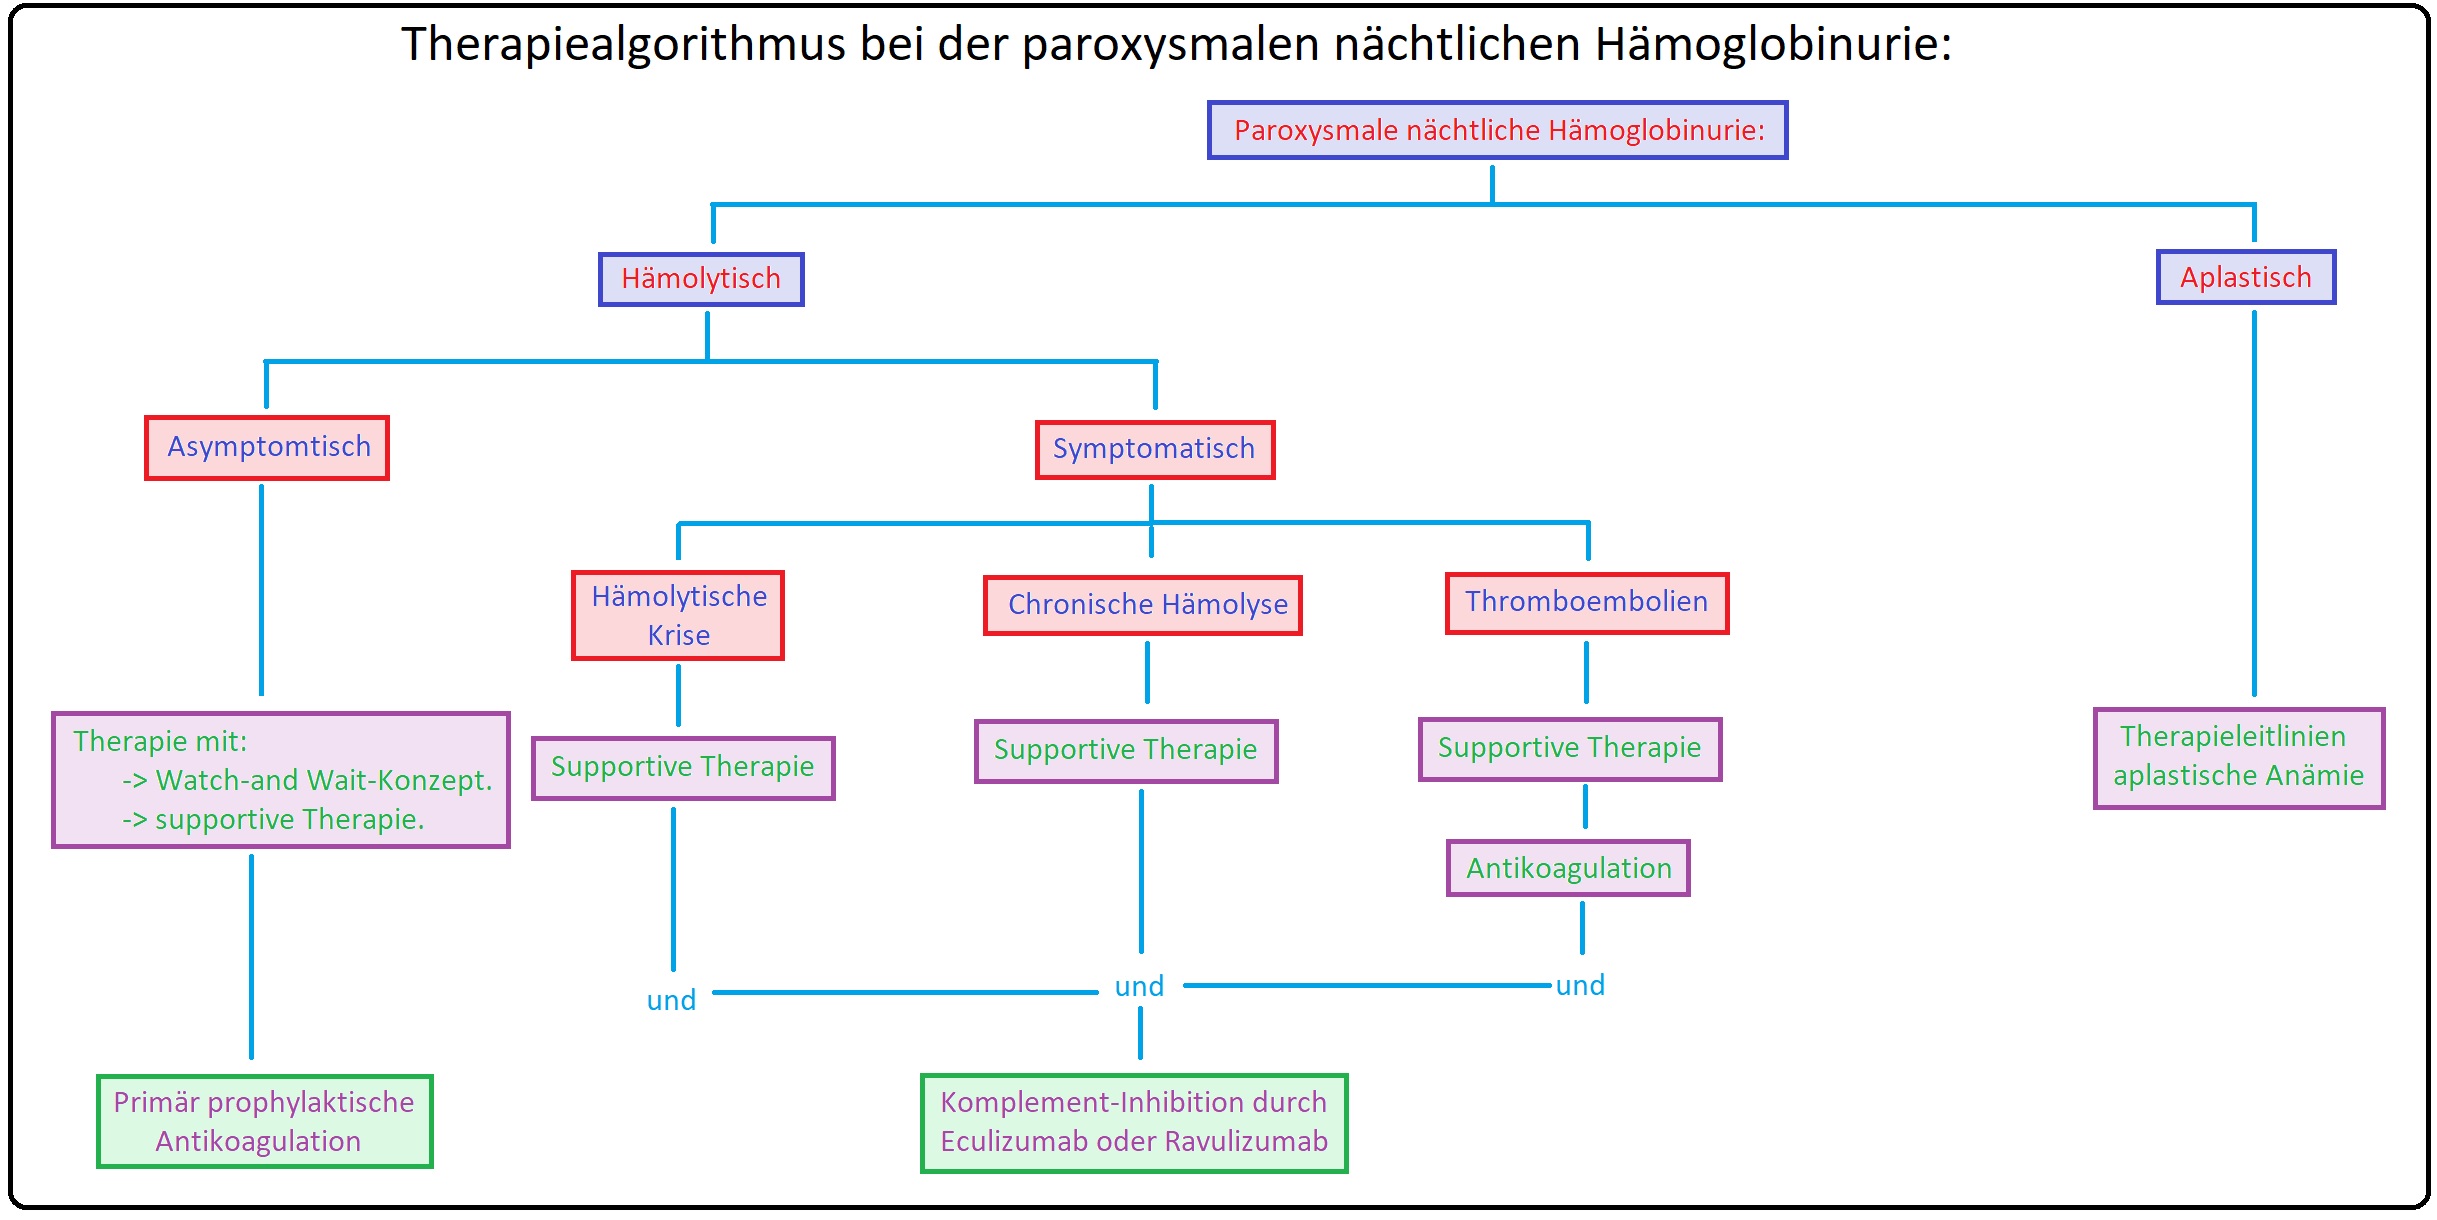 1196 Therapiealgorithmus bei der paroxysmalen nächtlichen Hämoglobinurie